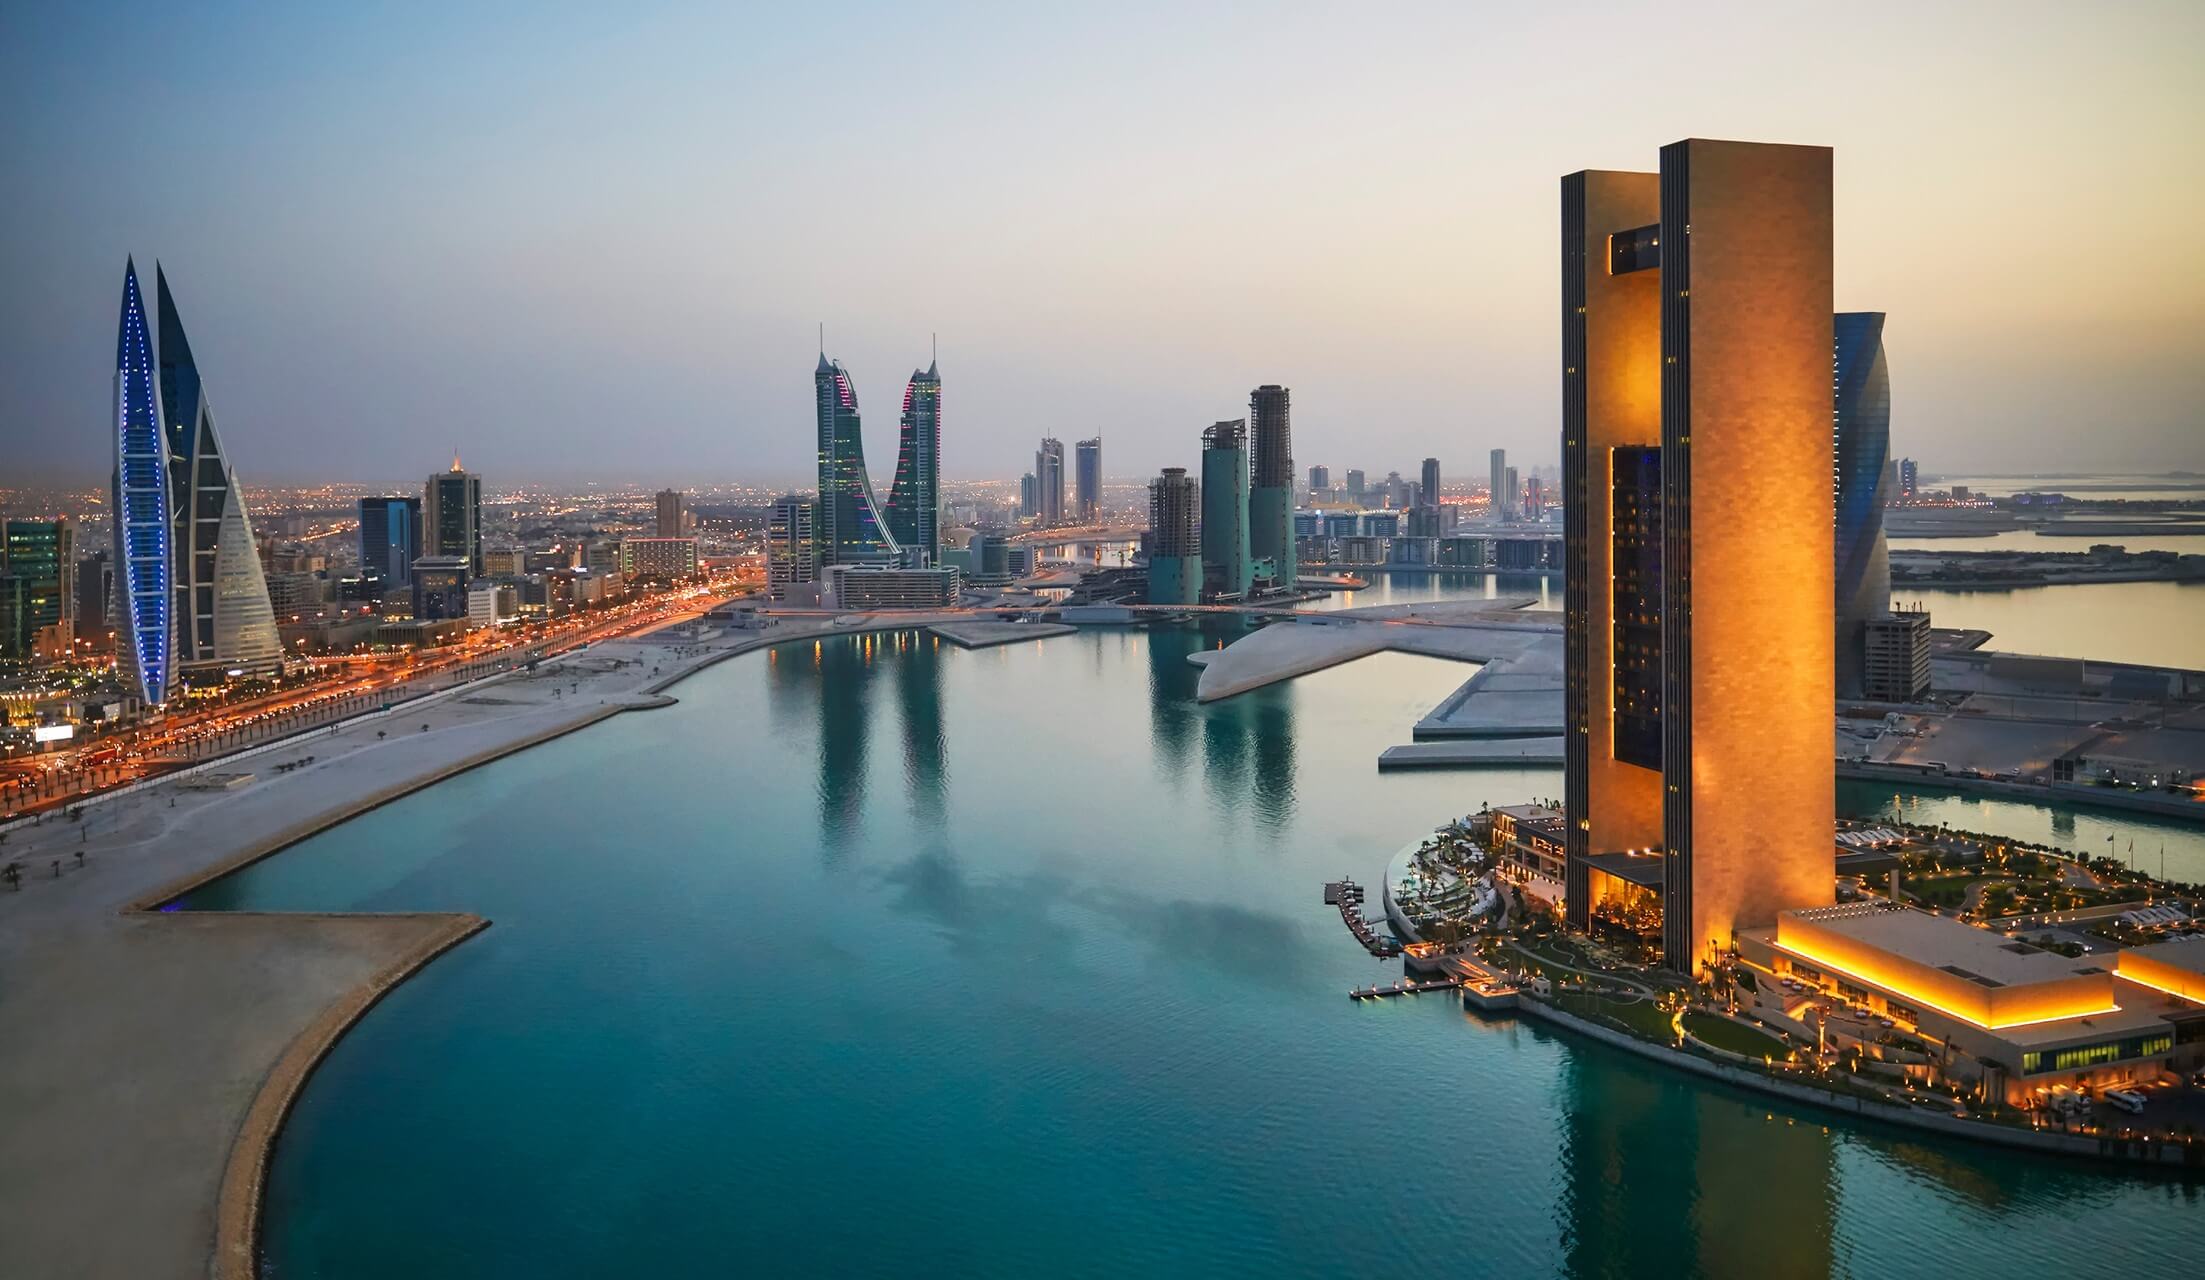 للسنة الثانية على التوالي البحرين تتصدر دول الشرق الأوسط وشمال أفريقيا في الحرية المالية والتجارية والاستثمار وفقاً لمؤشر الحرية الاقتصادية 2023 الصادر عن مؤسسة هيرتيج فاونديشن